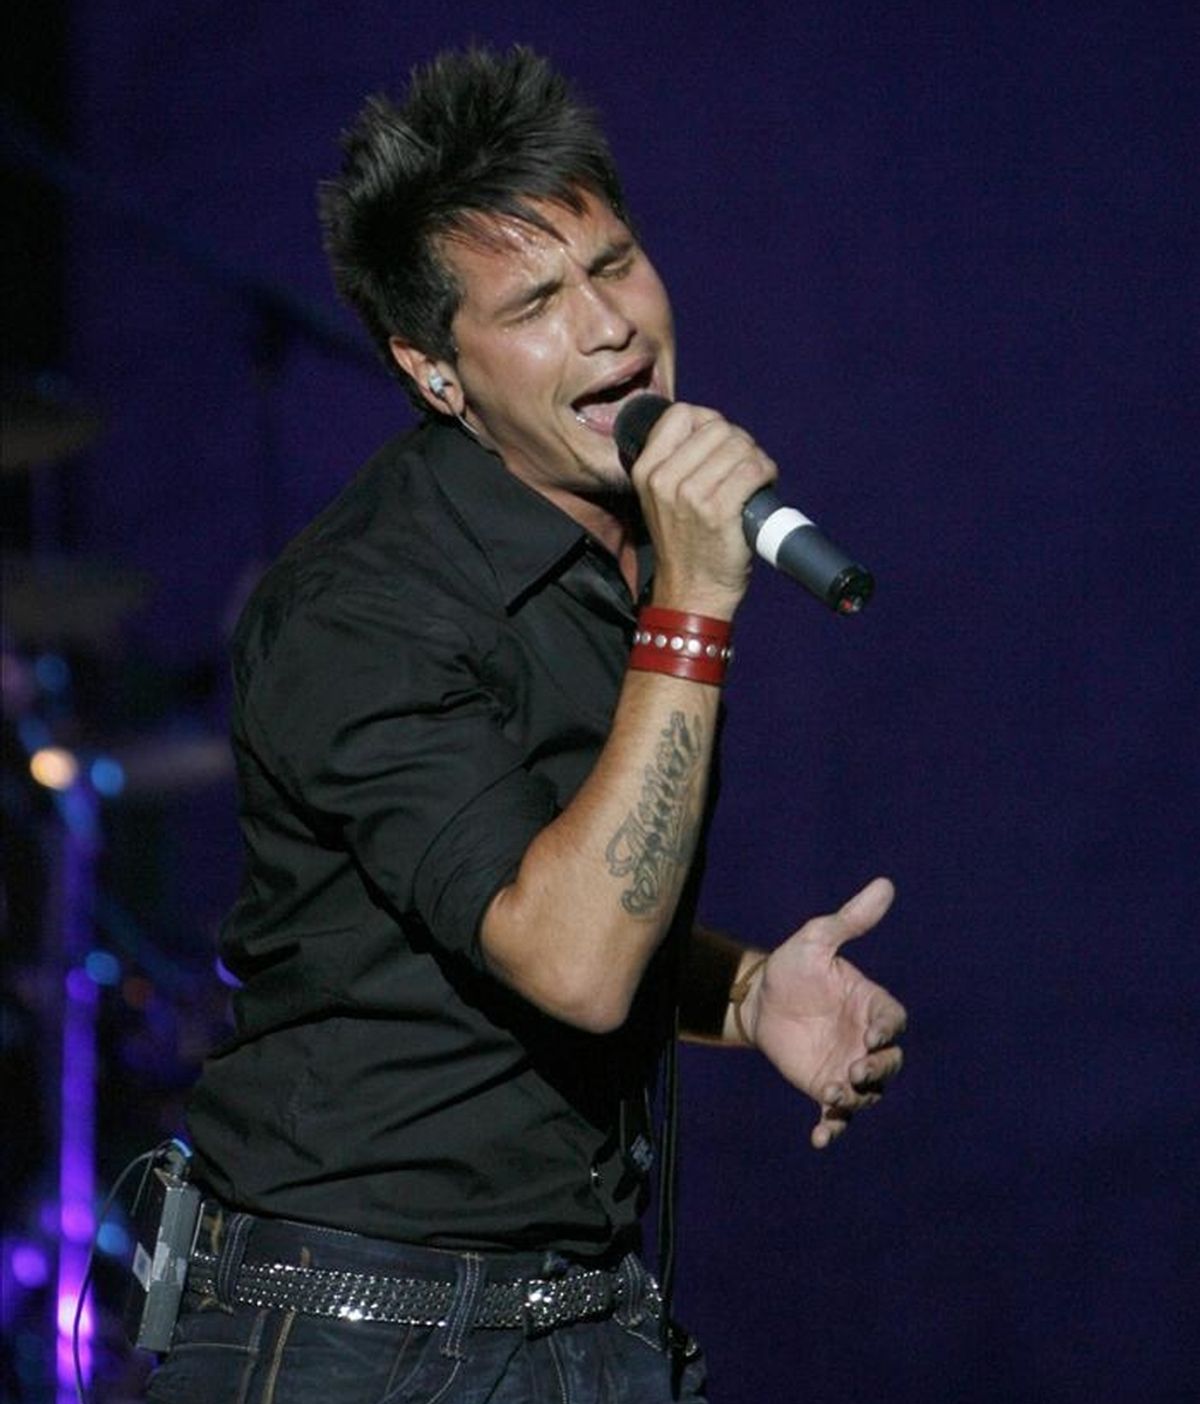 El cantante jerezano David de Maria, quien apoyará la campaña en contra de la violencia machista. EFE/Archivo